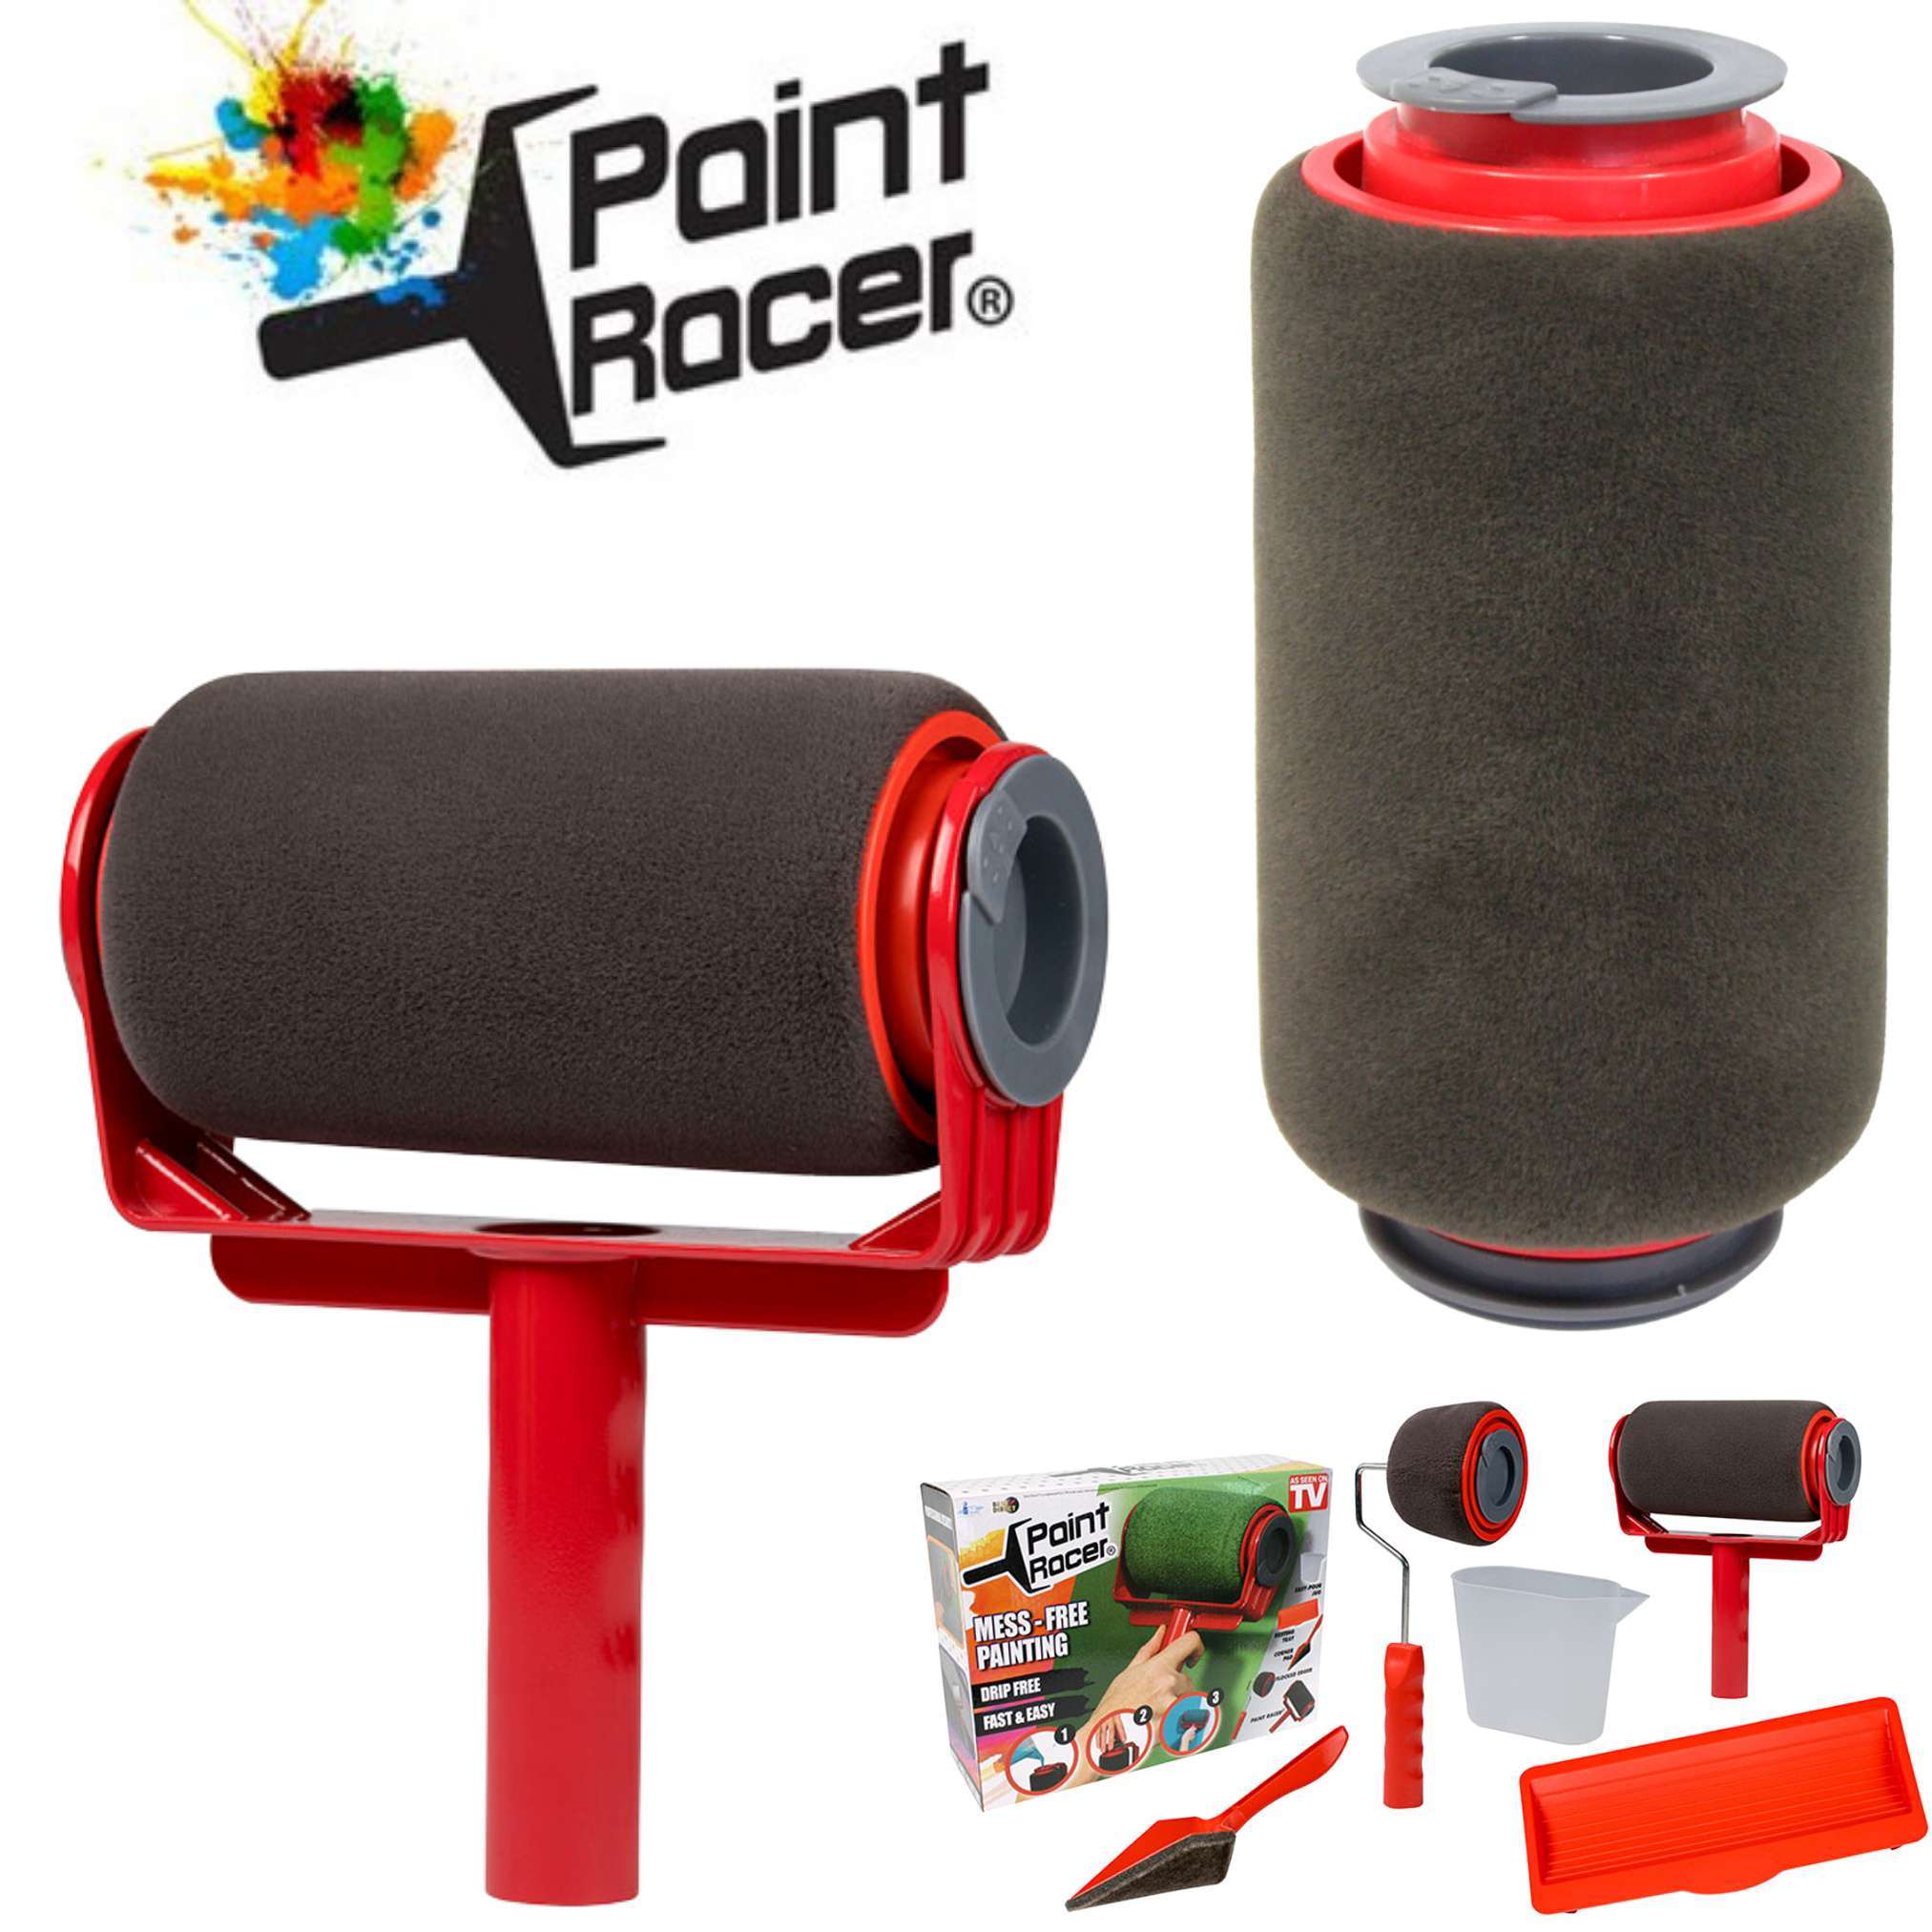 Paint Racer® befüllbarer Farbroller inkl. | Werkzeug-Sets